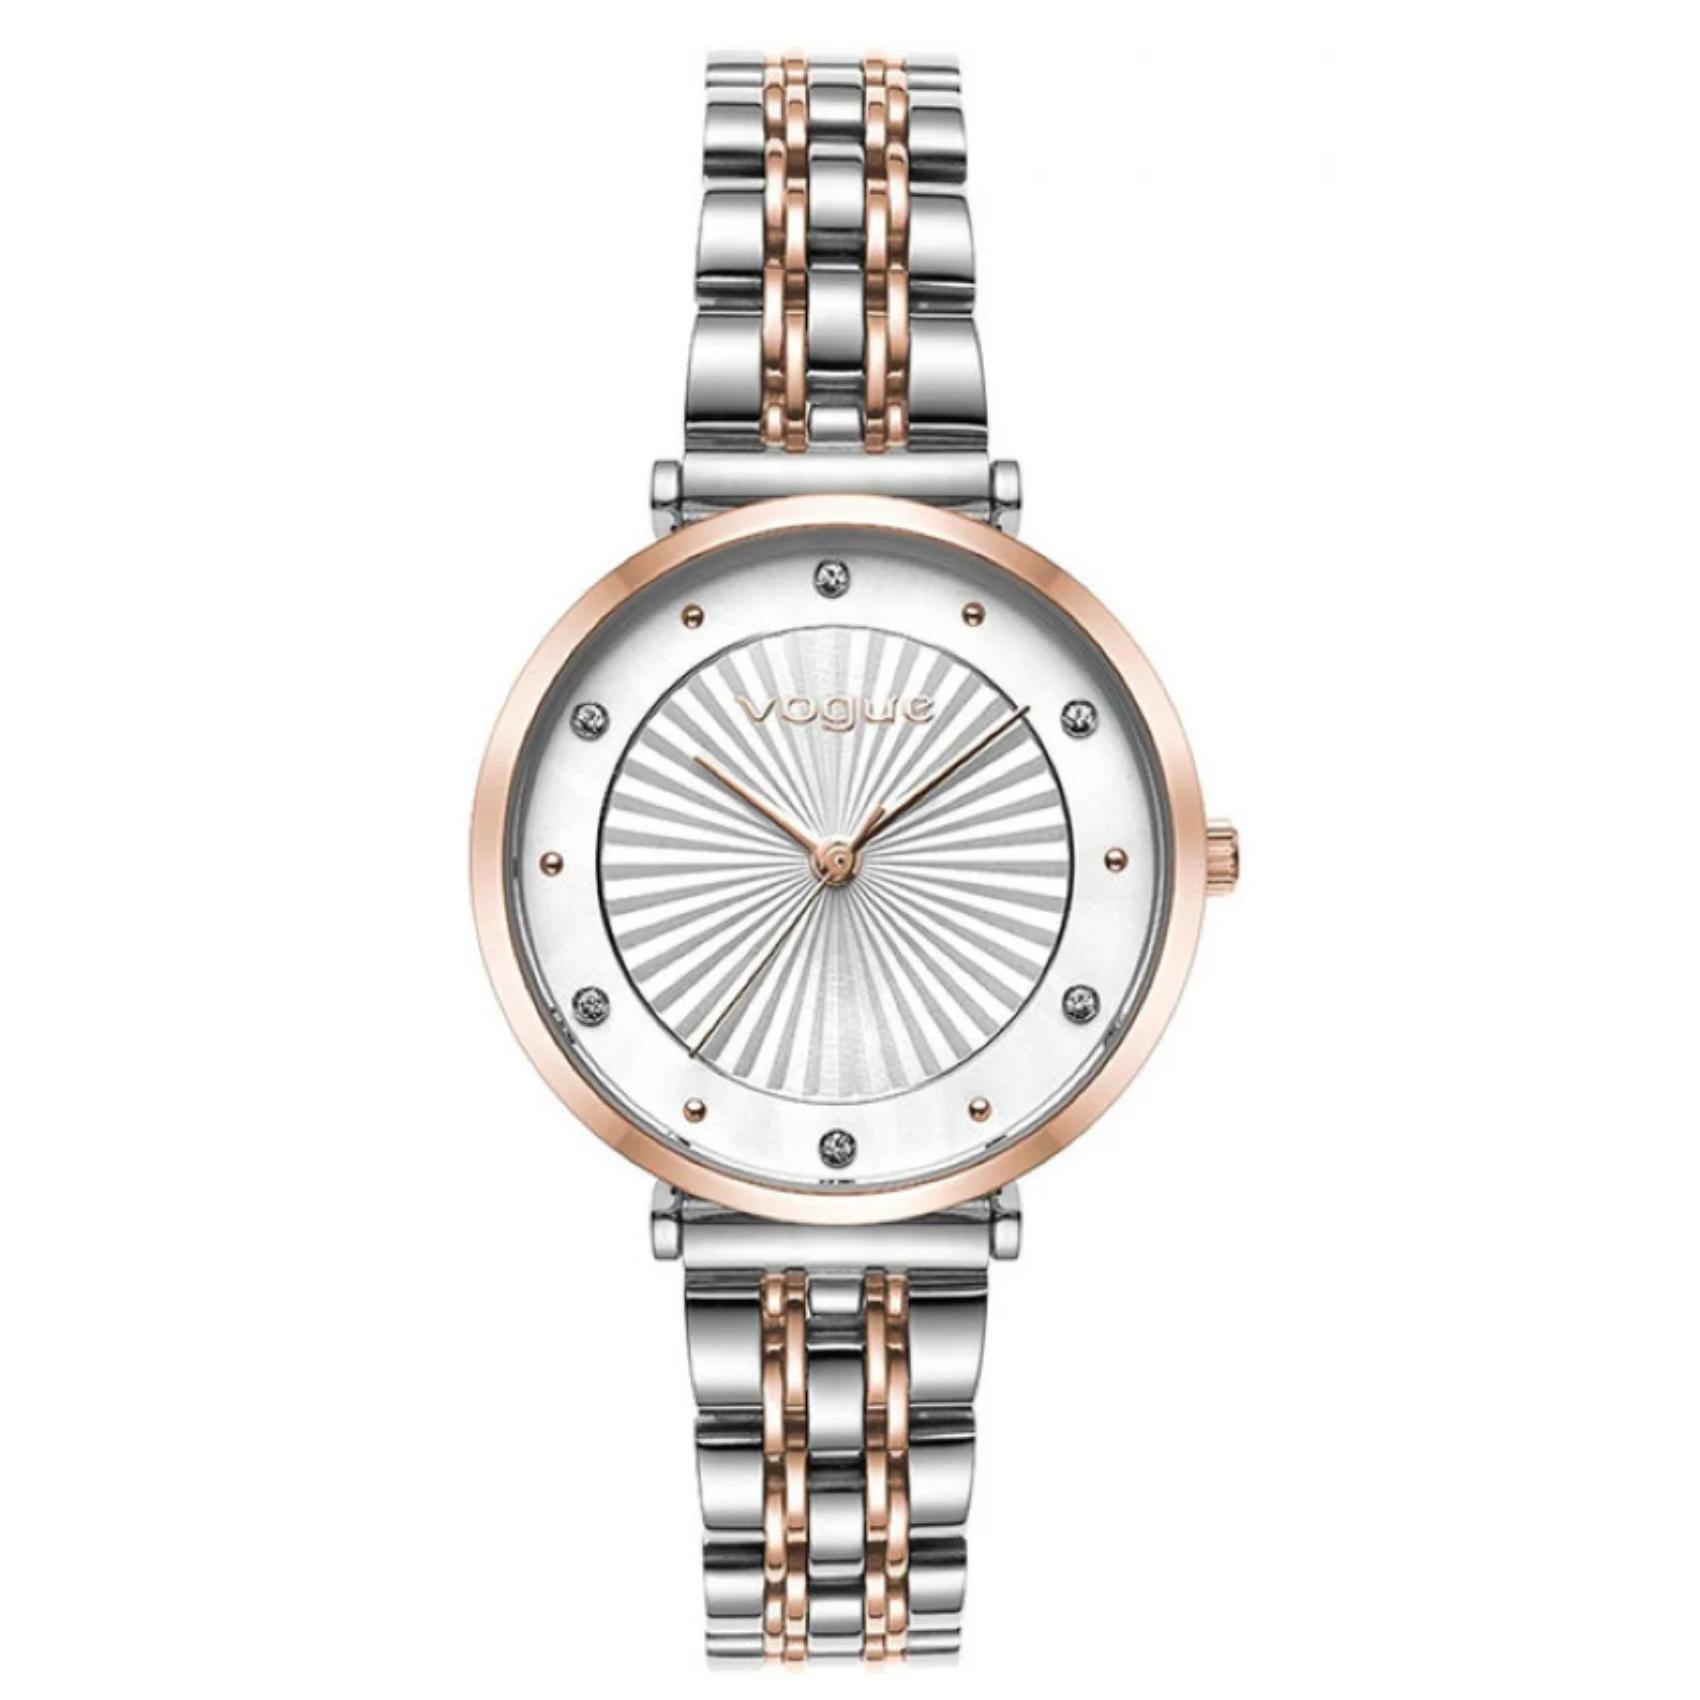 Γυναικείο ρολόι VOGUE Bliss 2020815371 με δίχρωμο ατσάλινο μπρασελέ, λευκό καντράν και ροζ χρυσούς δείκτες και ζιργκόν περιμετρικά στο εσωτερικό του.